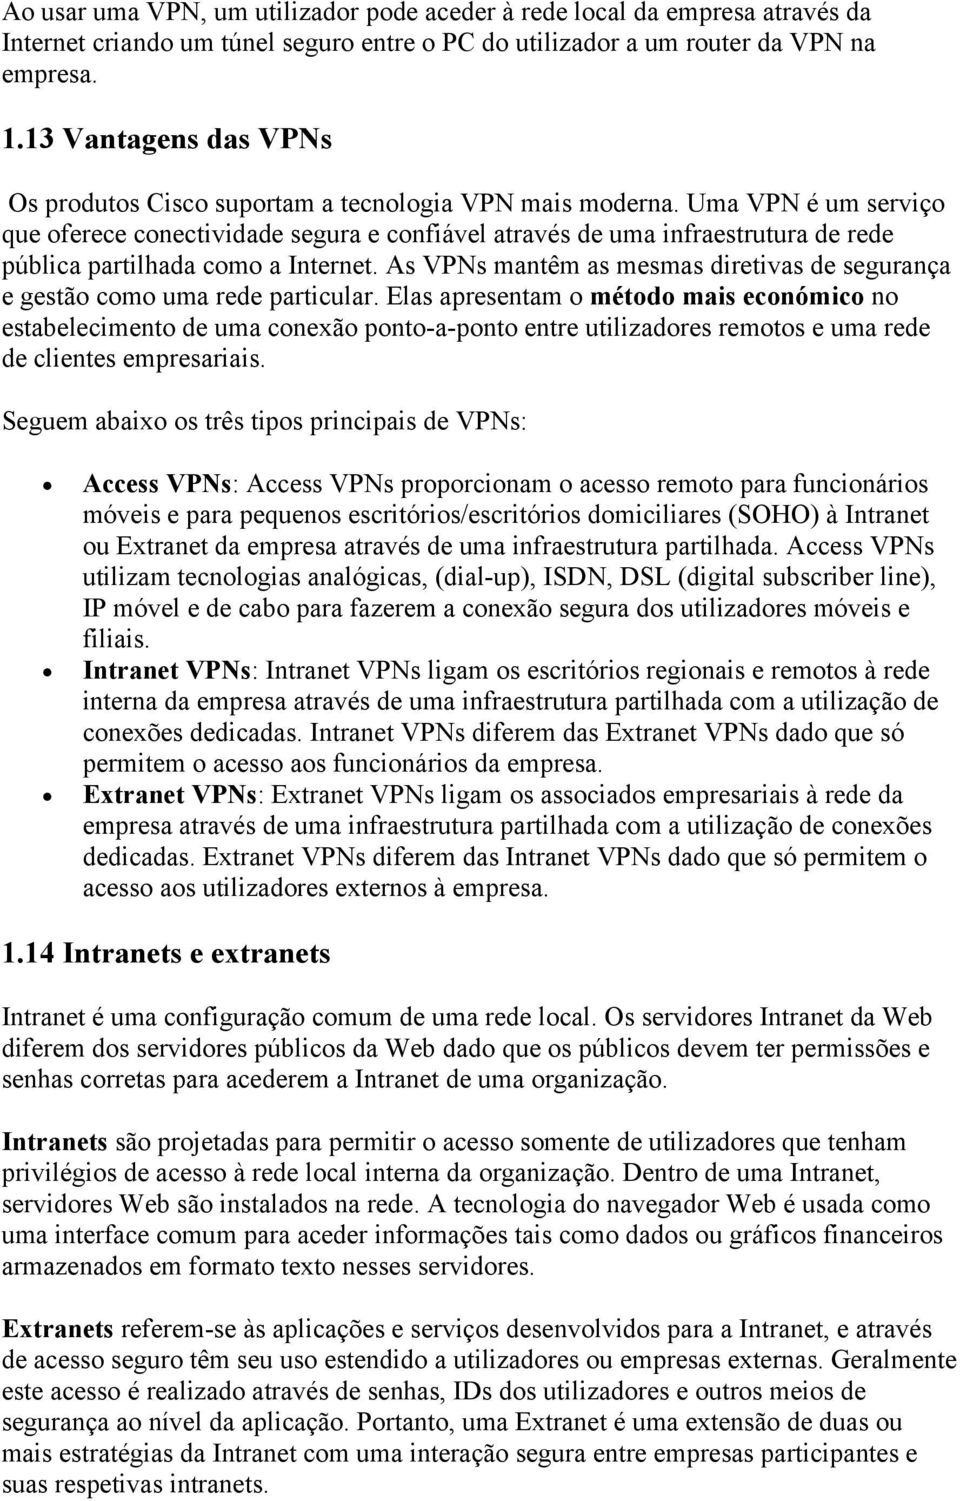 Uma VPN é um serviço que oferece conectividade segura e confiável através de uma infraestrutura de rede pública partilhada como a Internet.